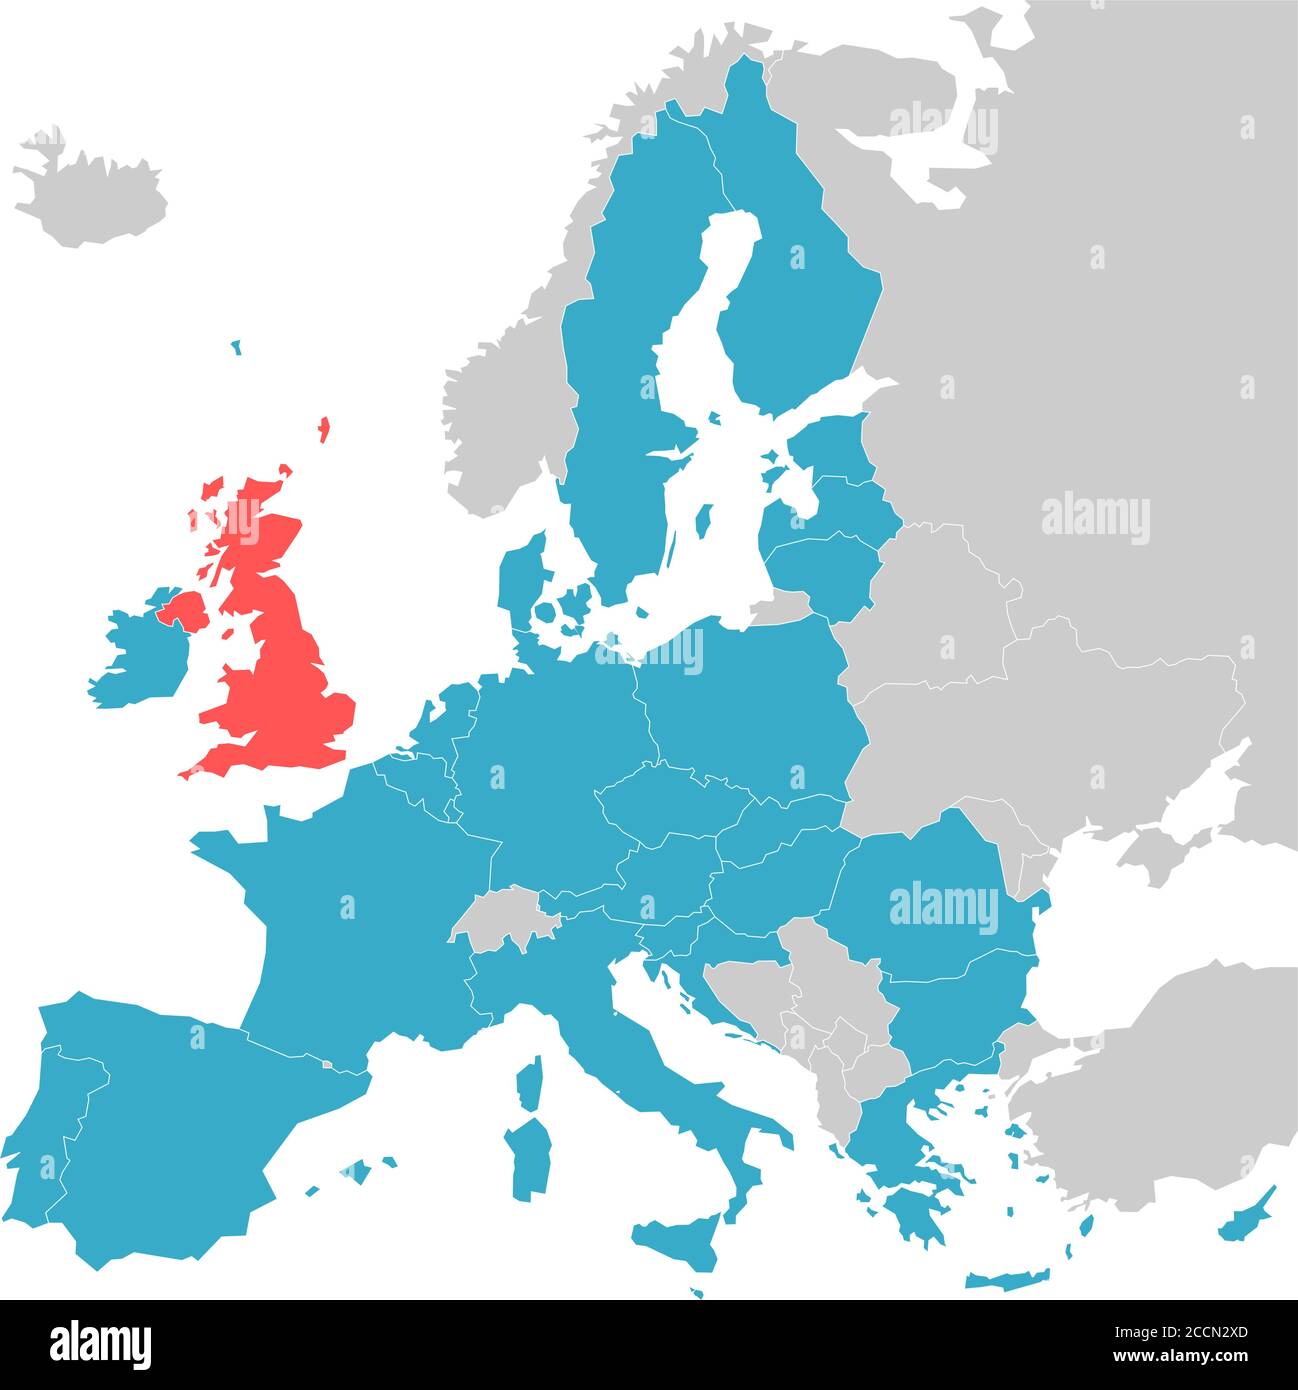 Brexit-Themenkarte - Europakarte mit hervorgehobenen EU-Mitgliedsstaaten und Großbritannien in verschiedenen Farben. Vektorgrafik. Vereinfachte Karte der Europäischen Union. Stock Vektor